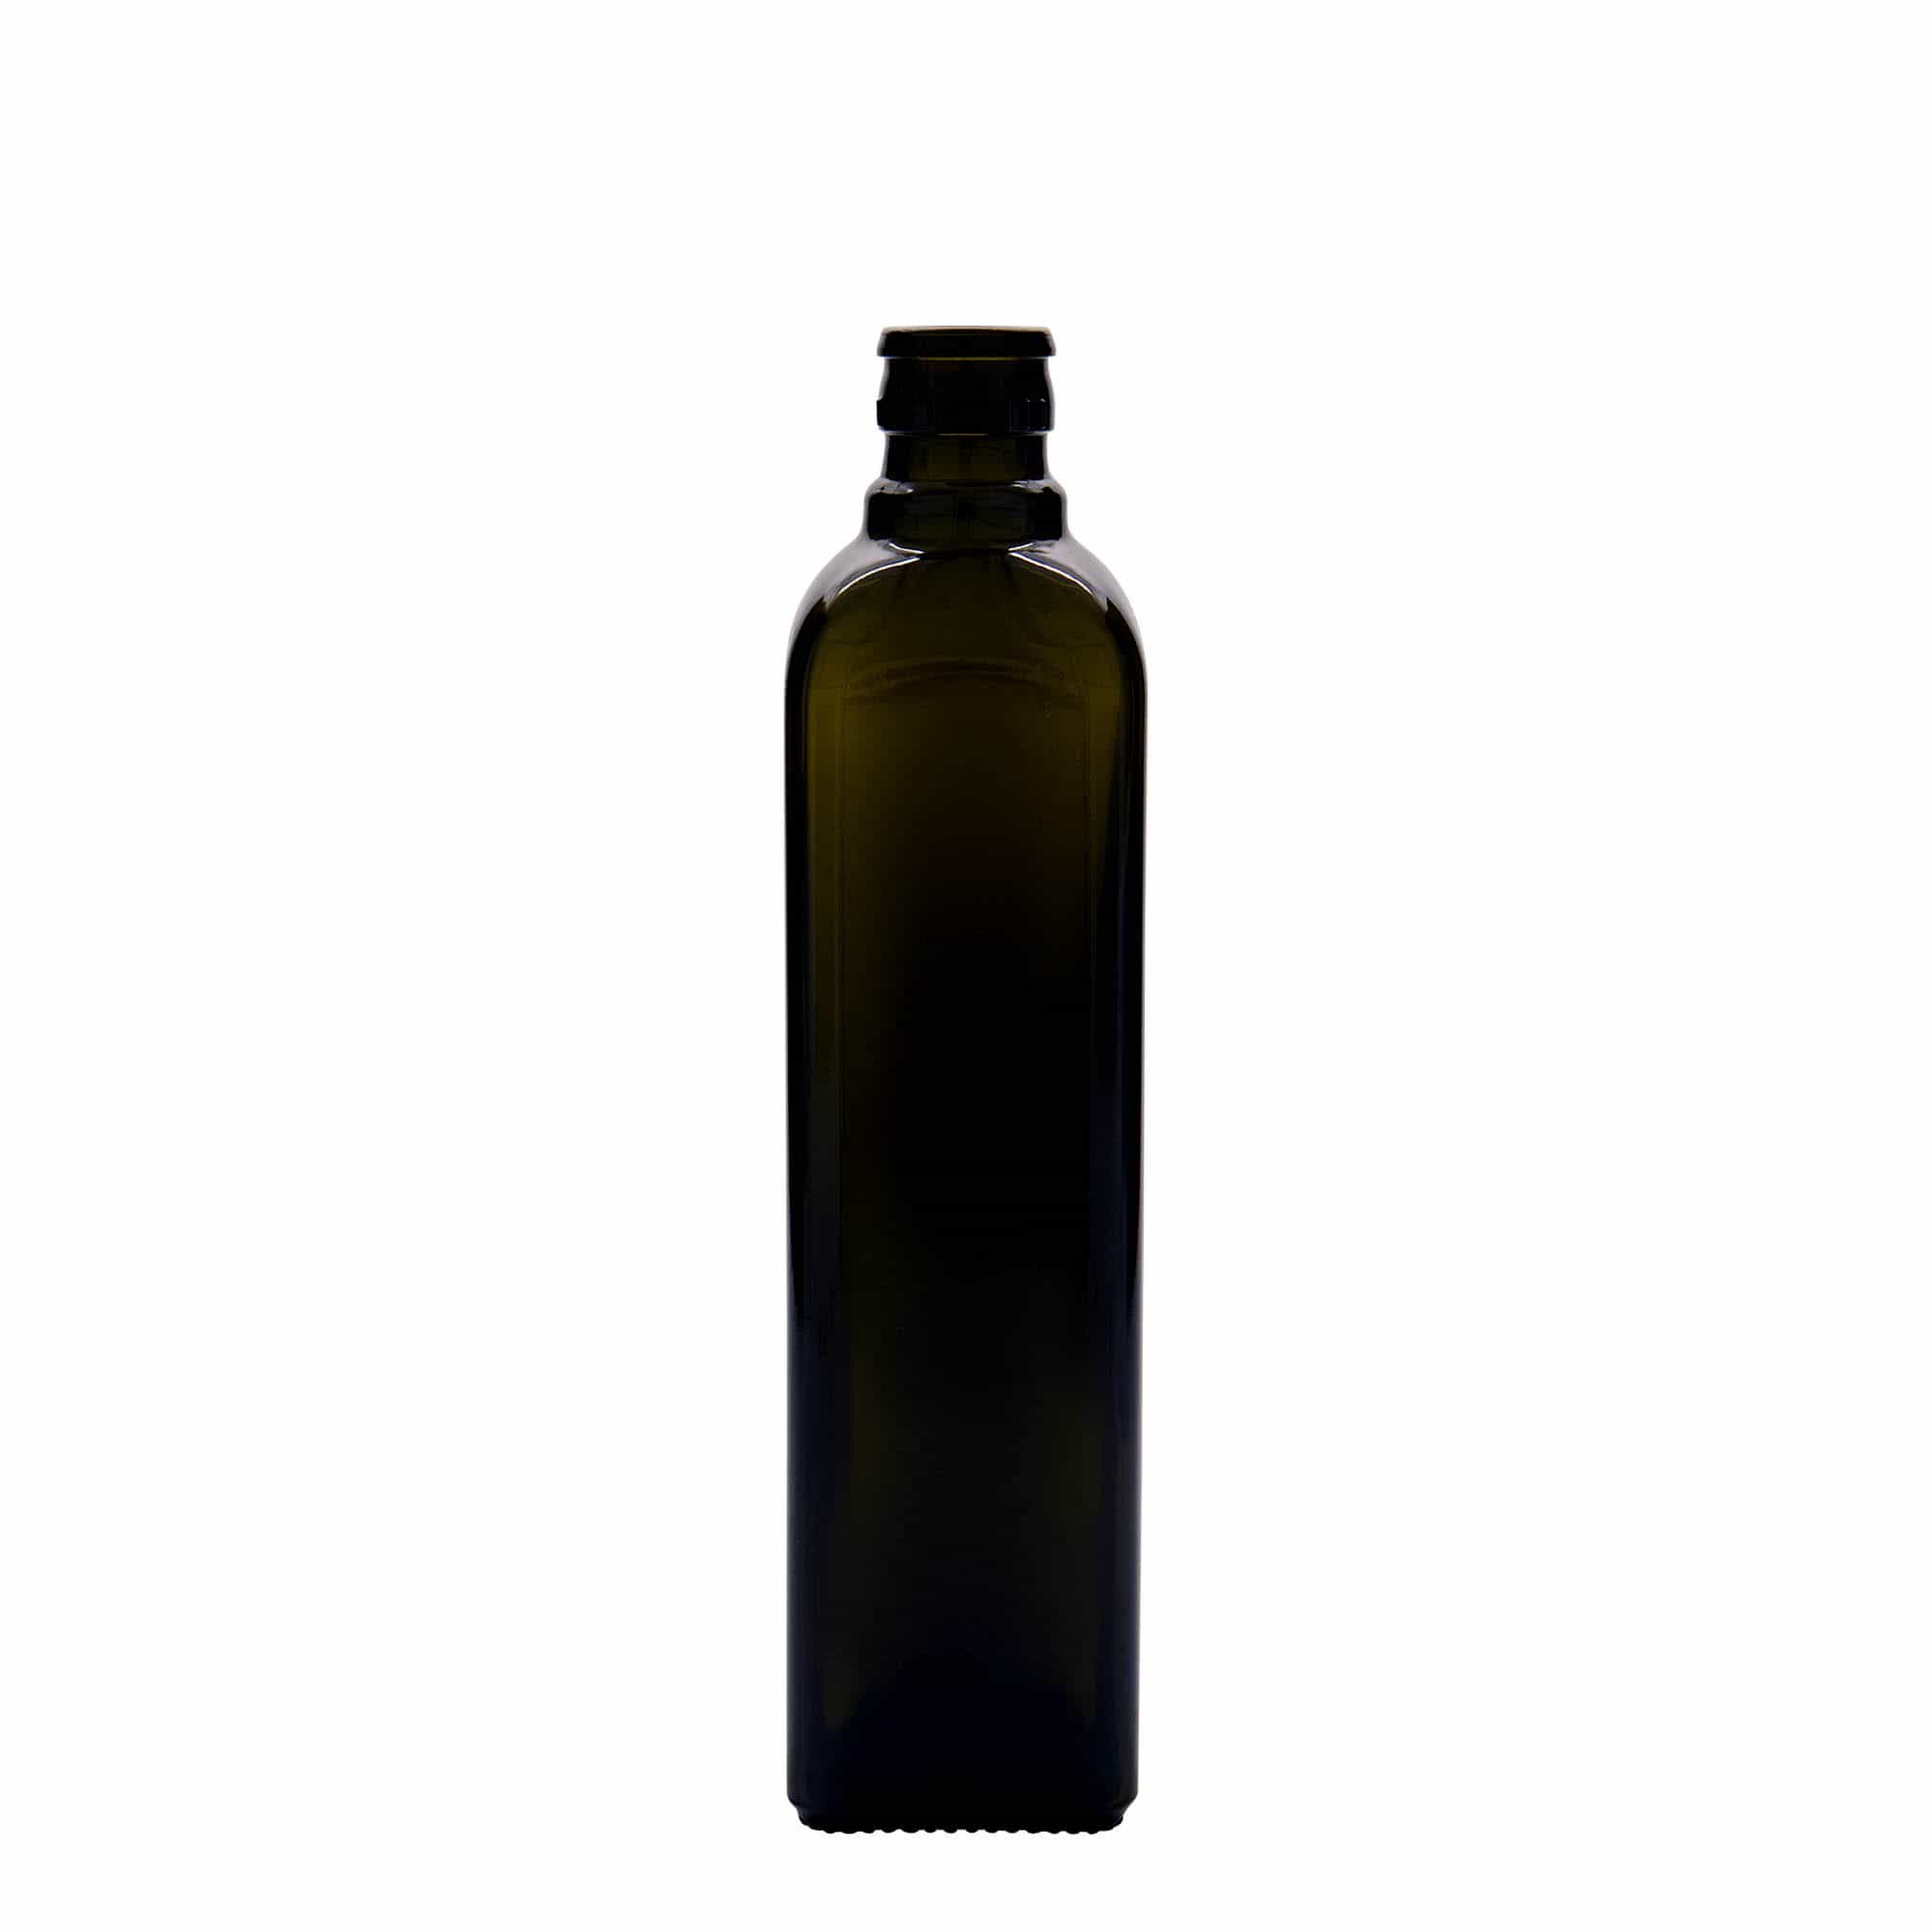 500 ml butelka na ocet/olej 'Quadra', szkło, kwadratowa, kolor zielony antyczny, zamknięcie: DOP